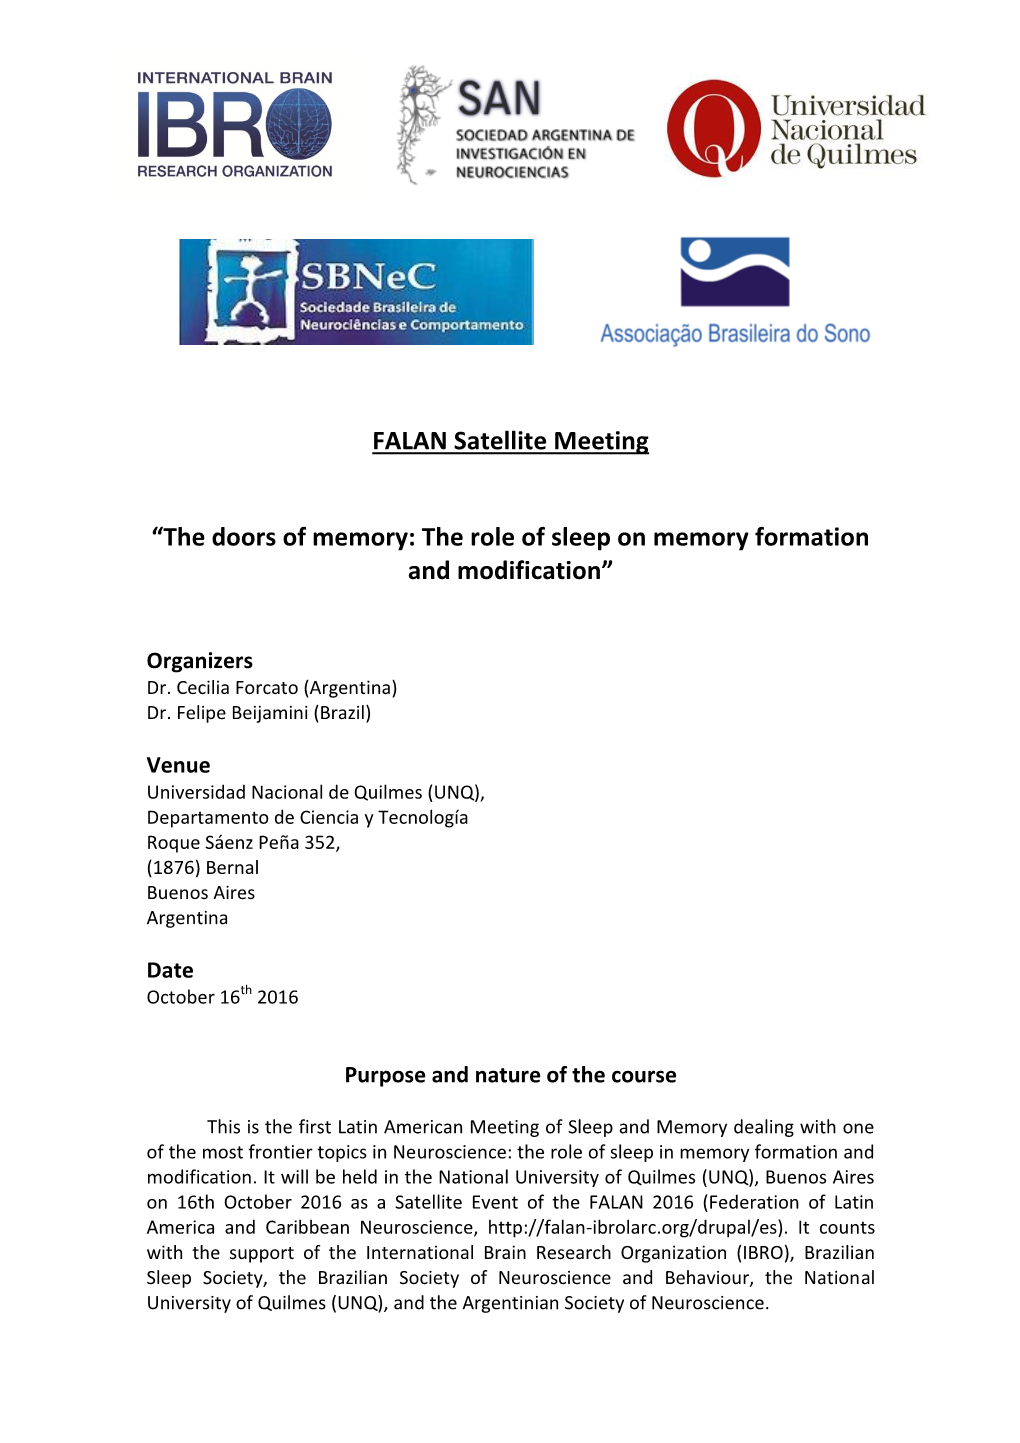 FALAN Satellite Meeting “The Doors of Memory